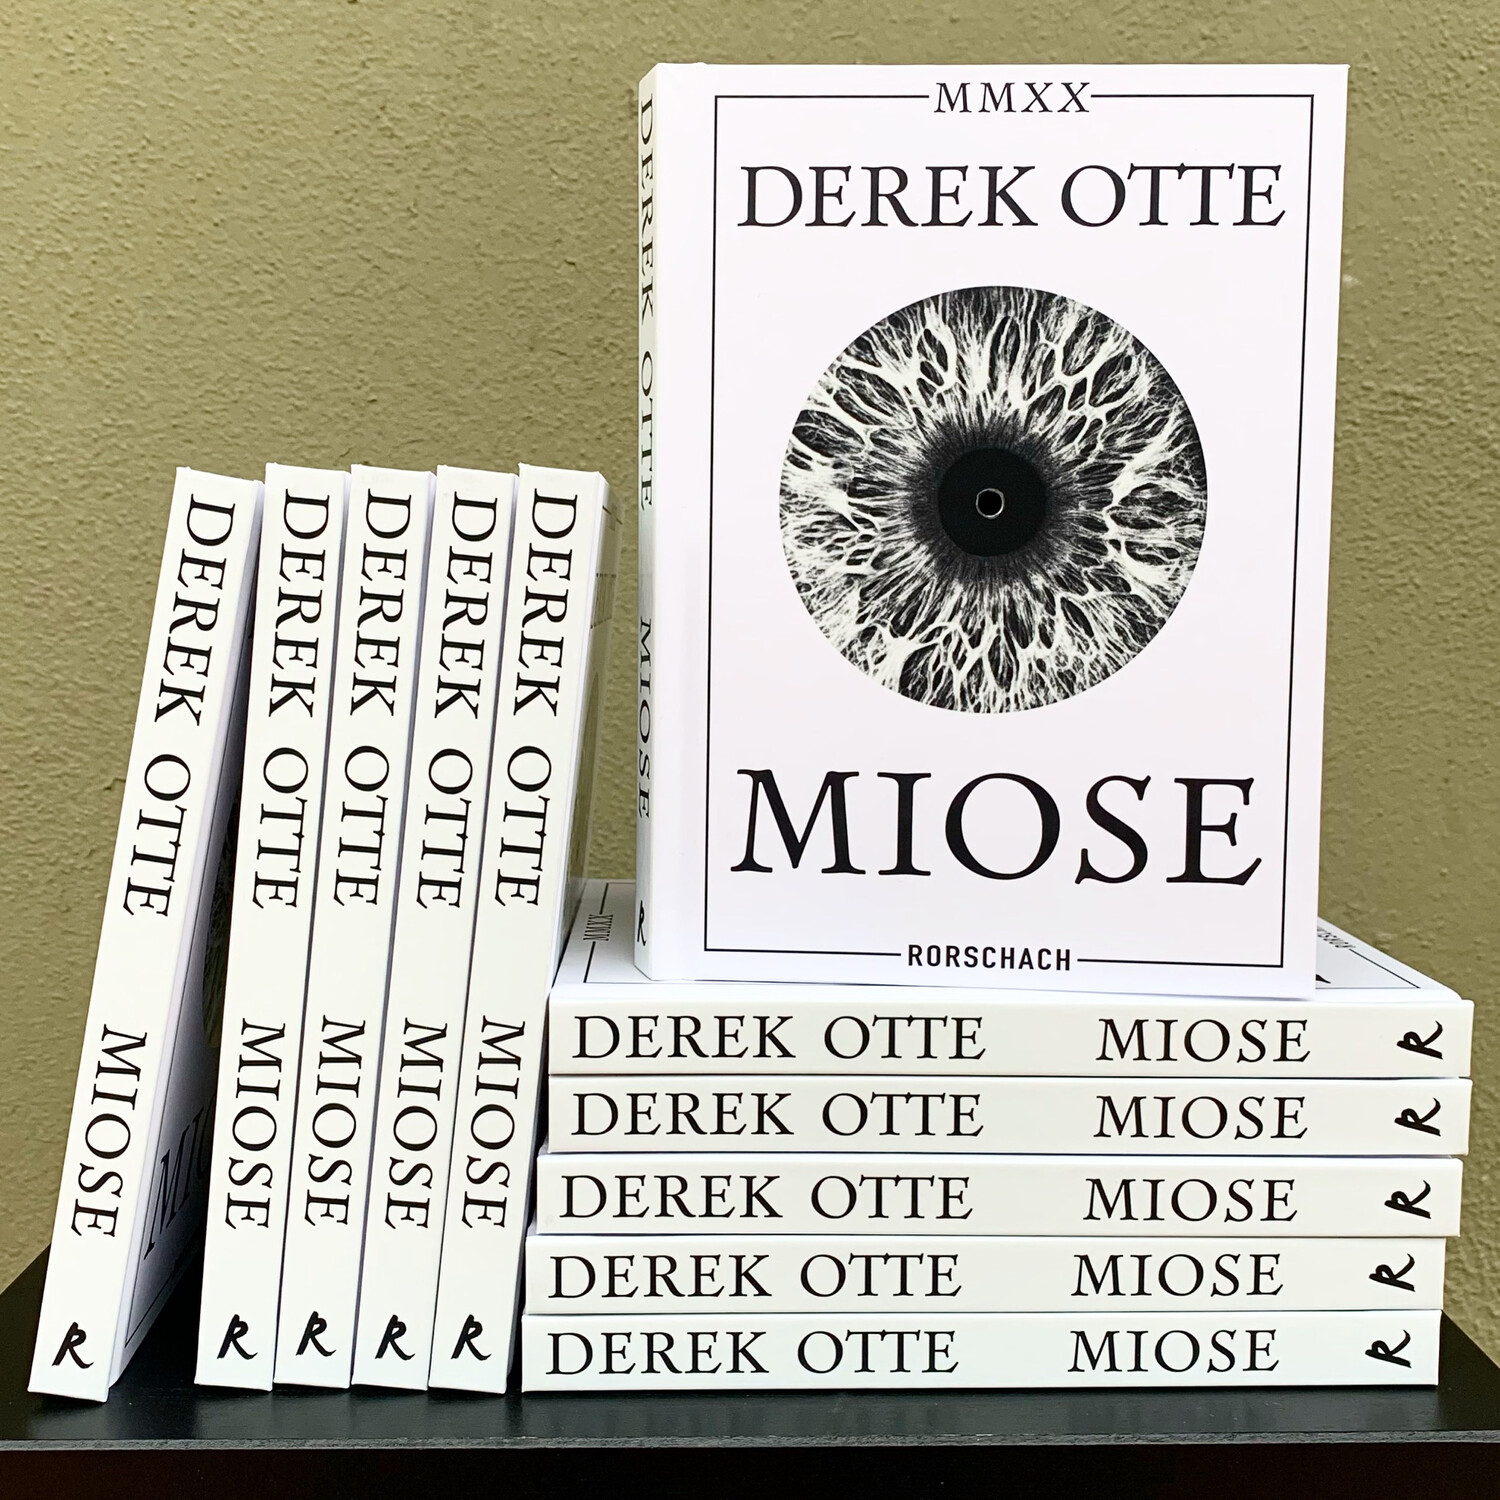 Miose - Derek Otte